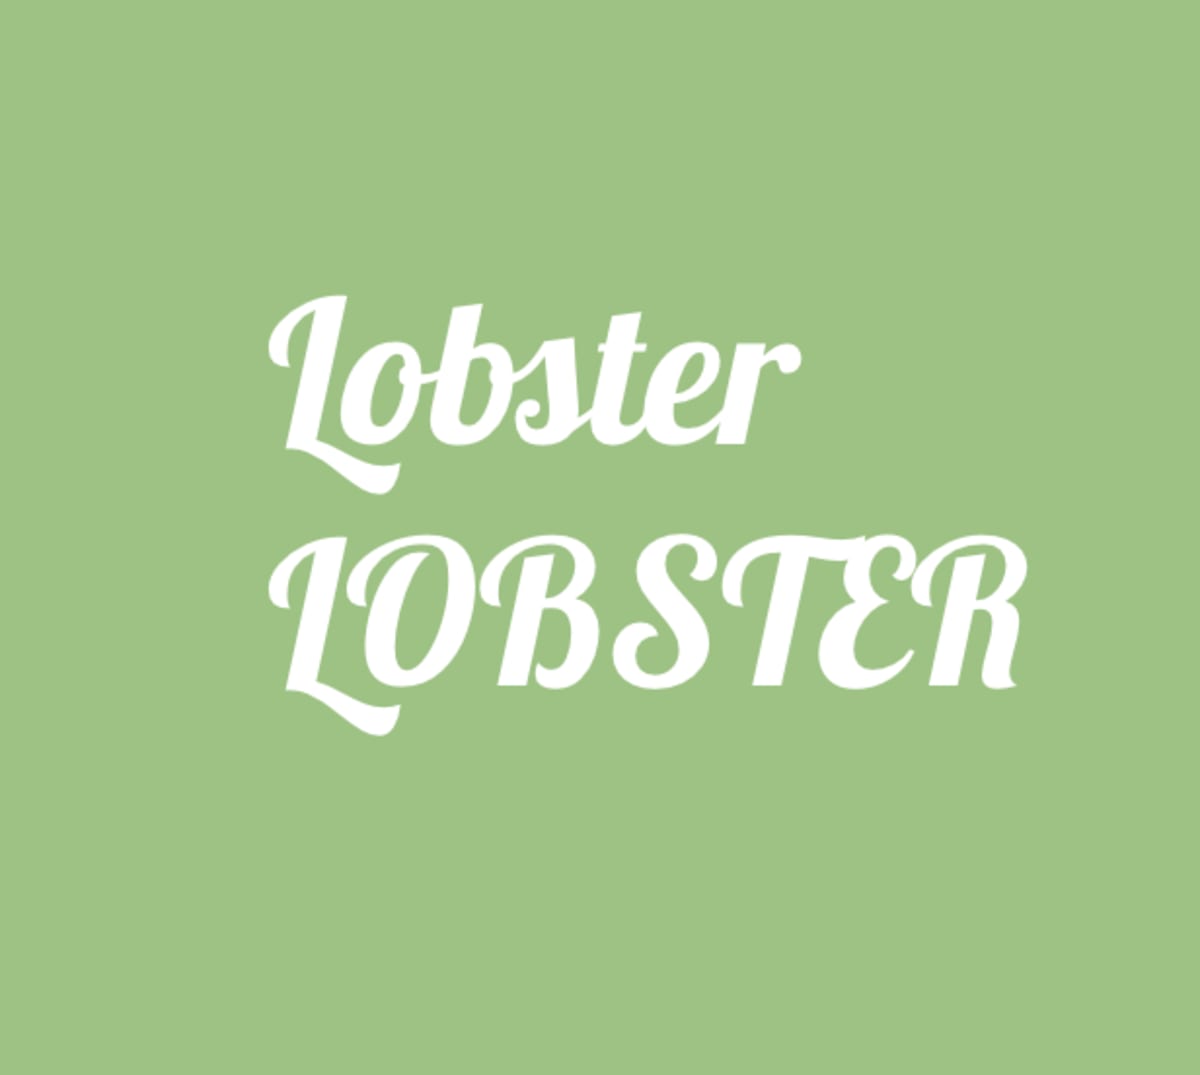 lobster font - logo fonts